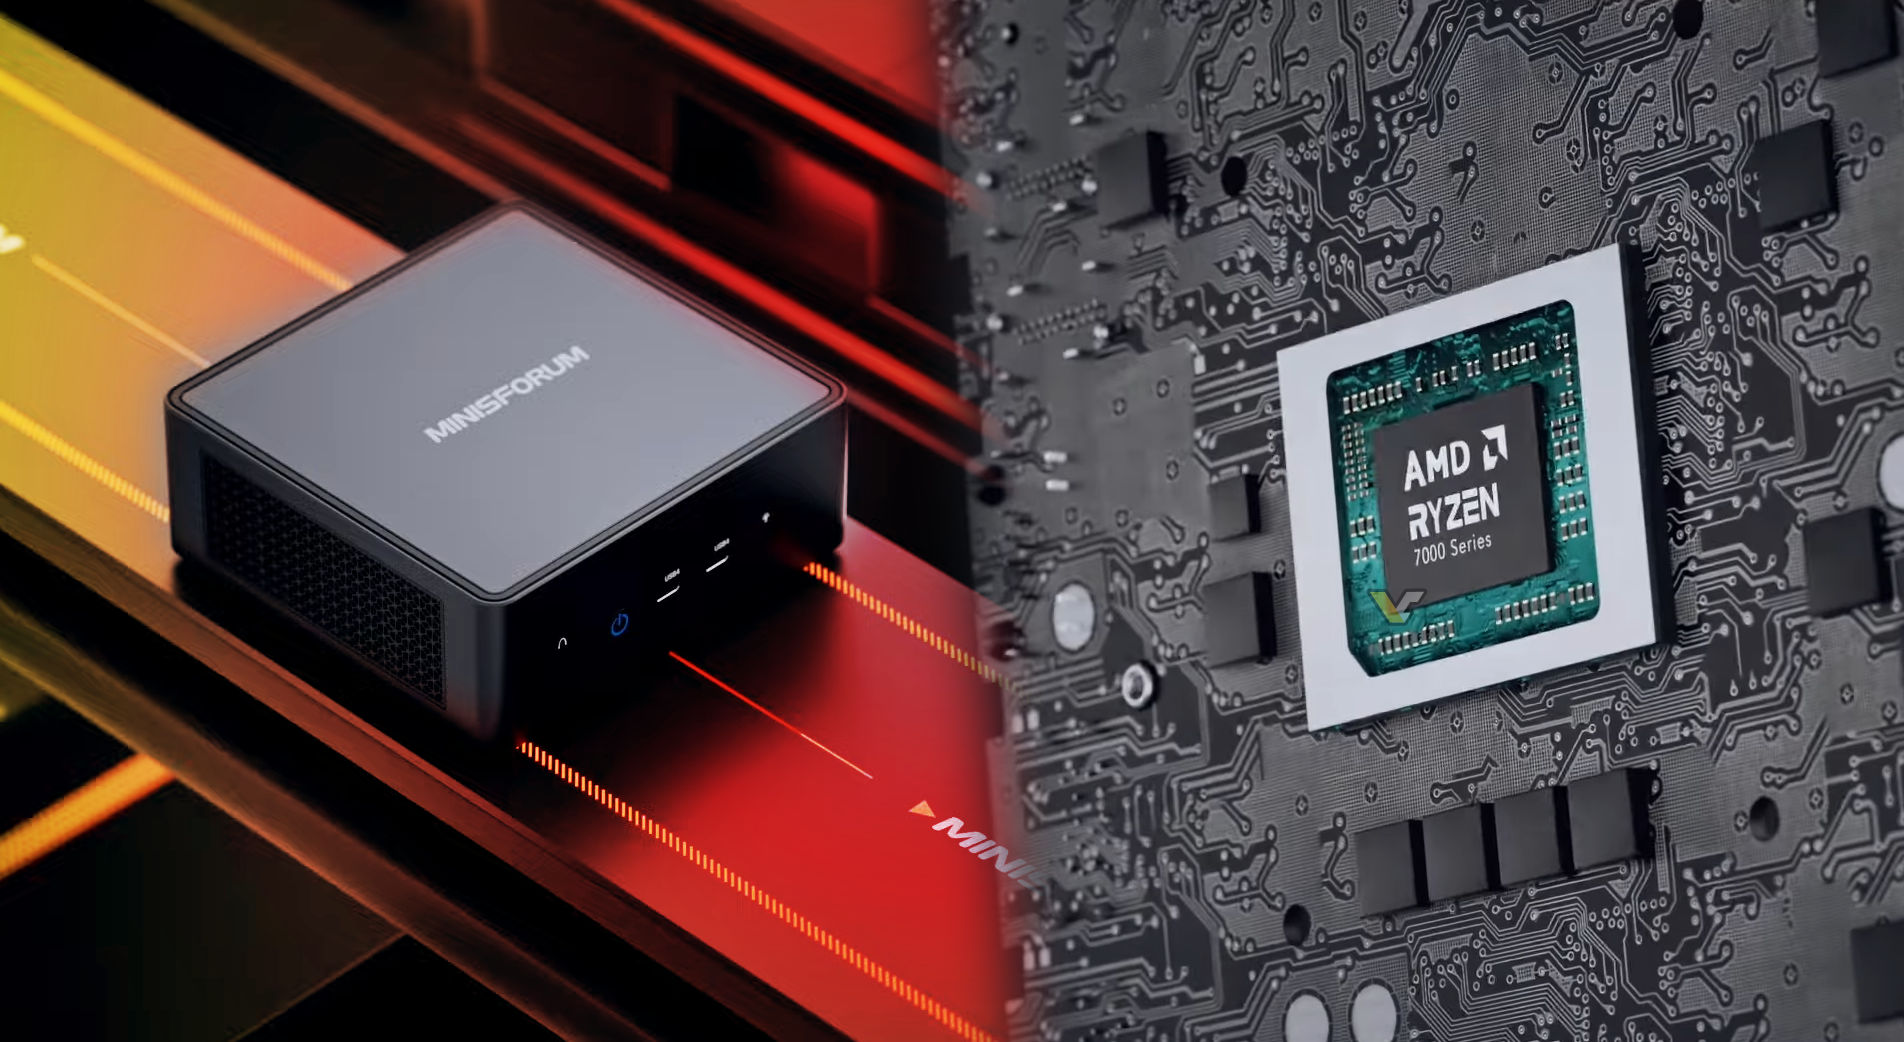 Minisforum debuts Venus UM790 Pro Mini-PC featuring AMD Ryzen 9